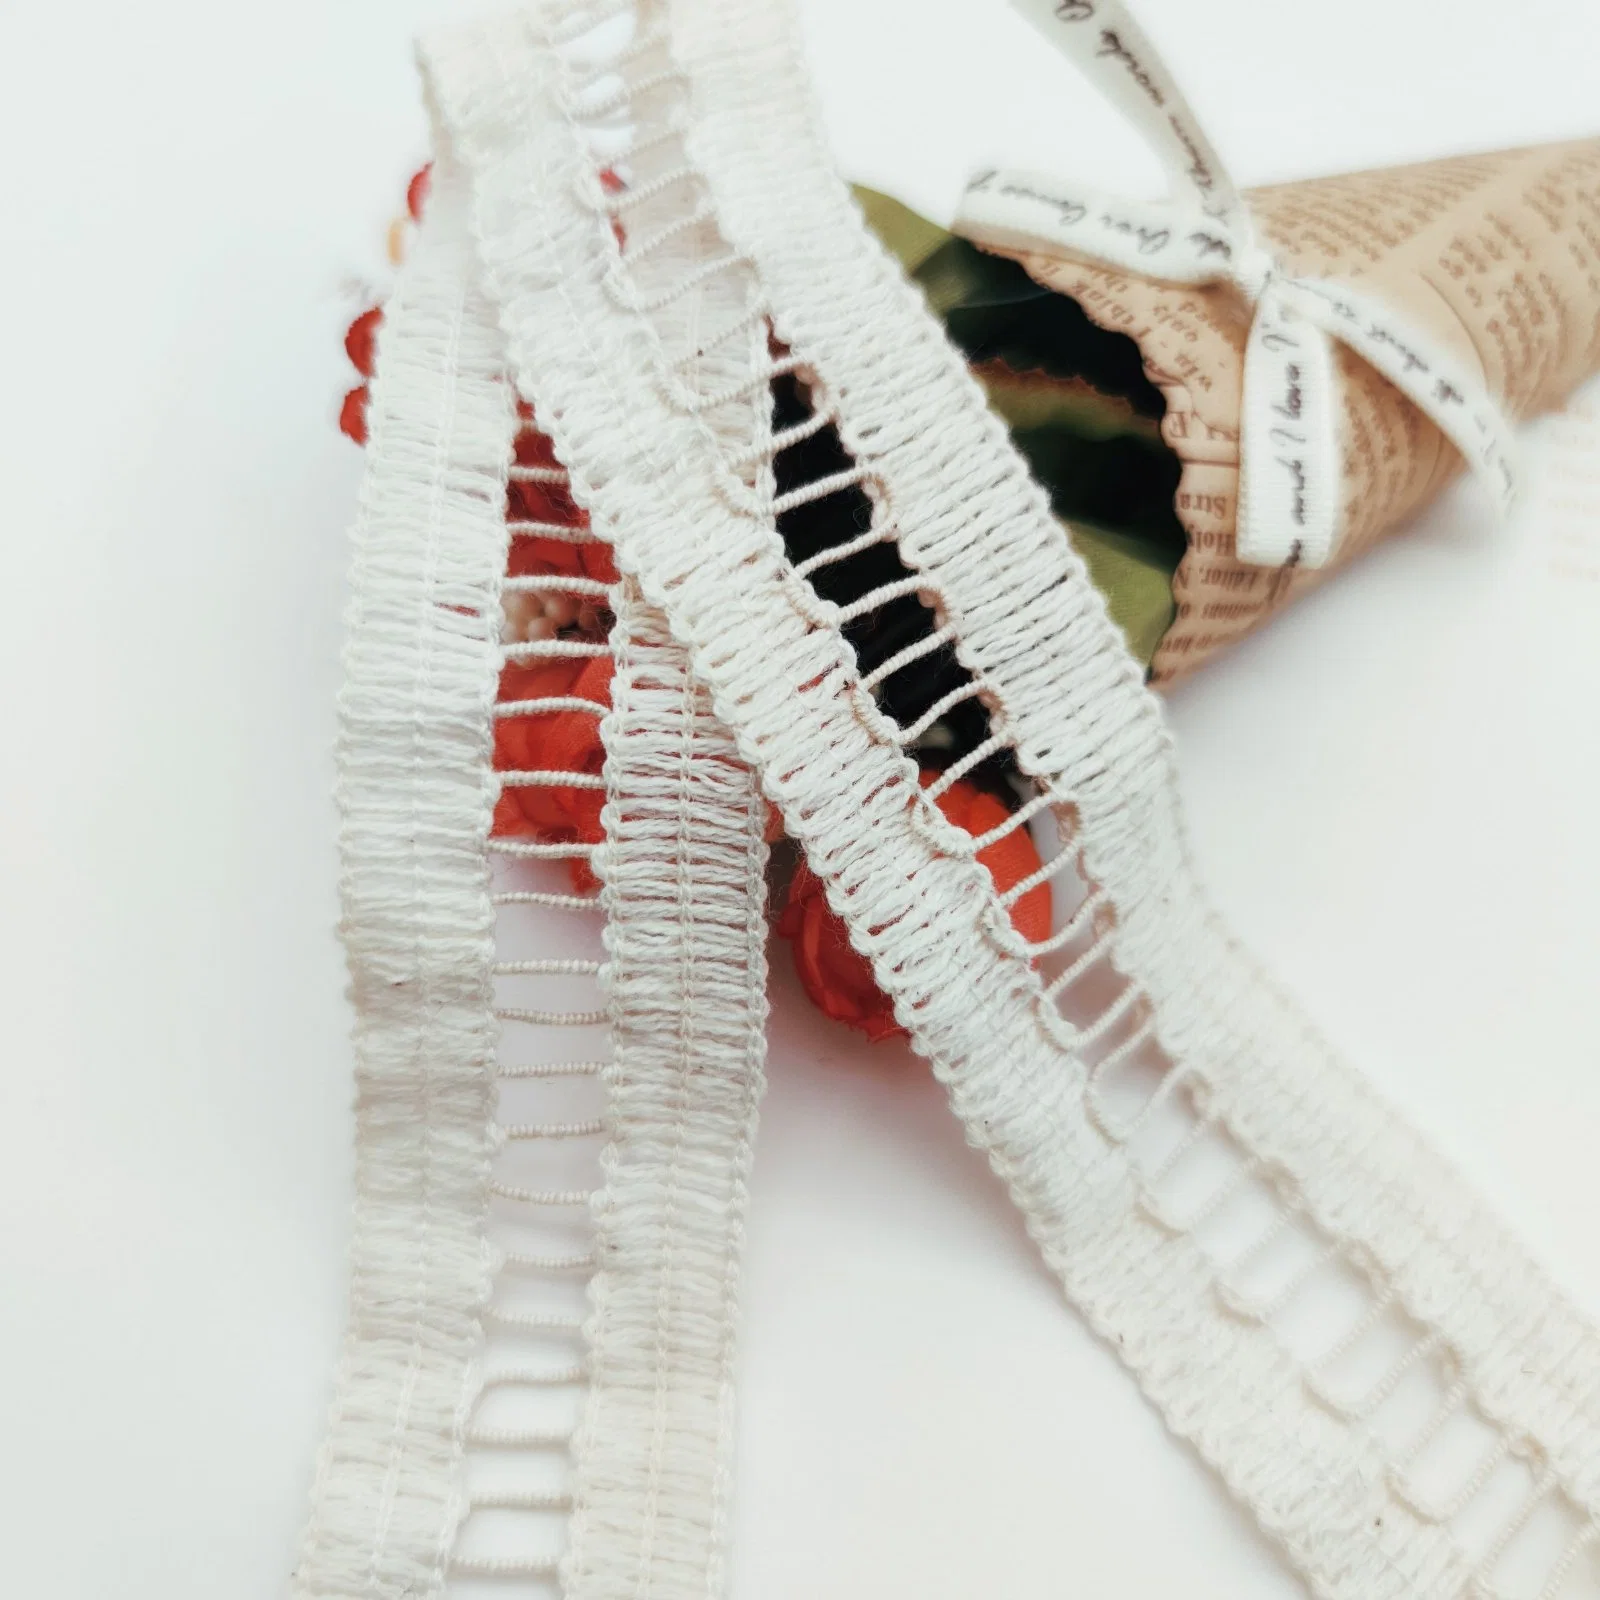 Cotton Cross Design Lace Trimming Garment Accessories Crochet Lace